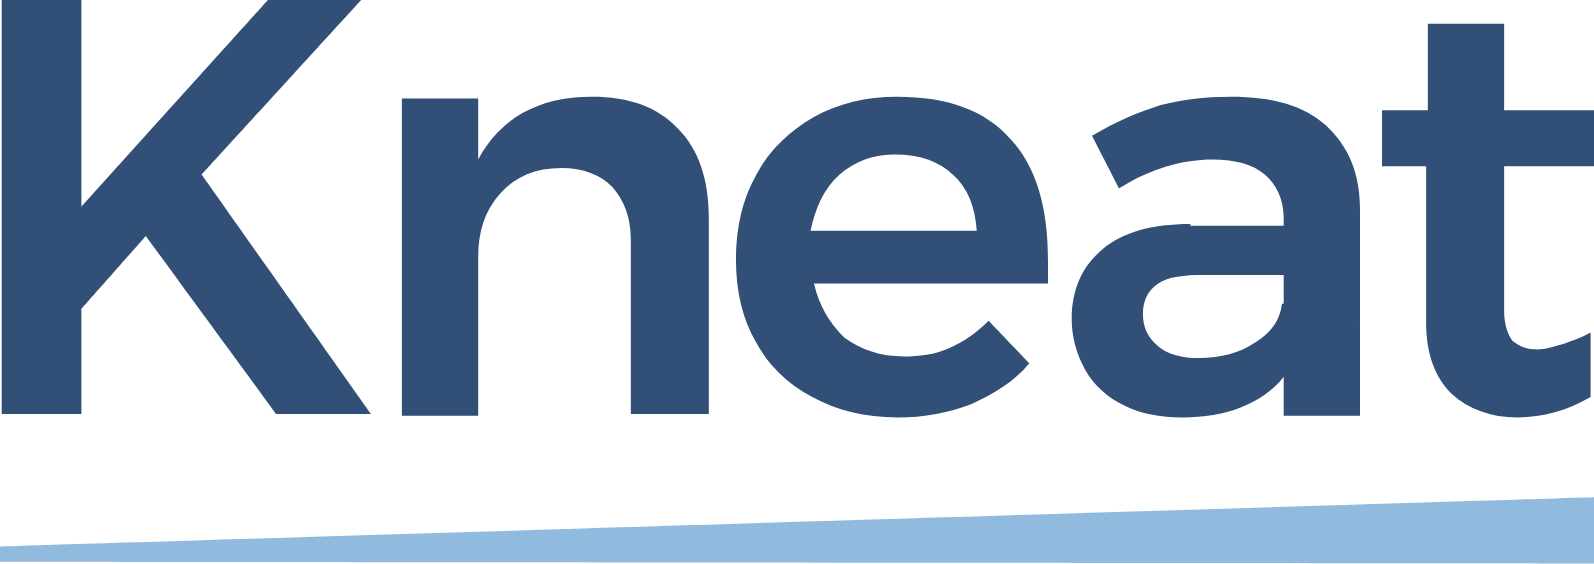 kneat.com logo large (transparent PNG)